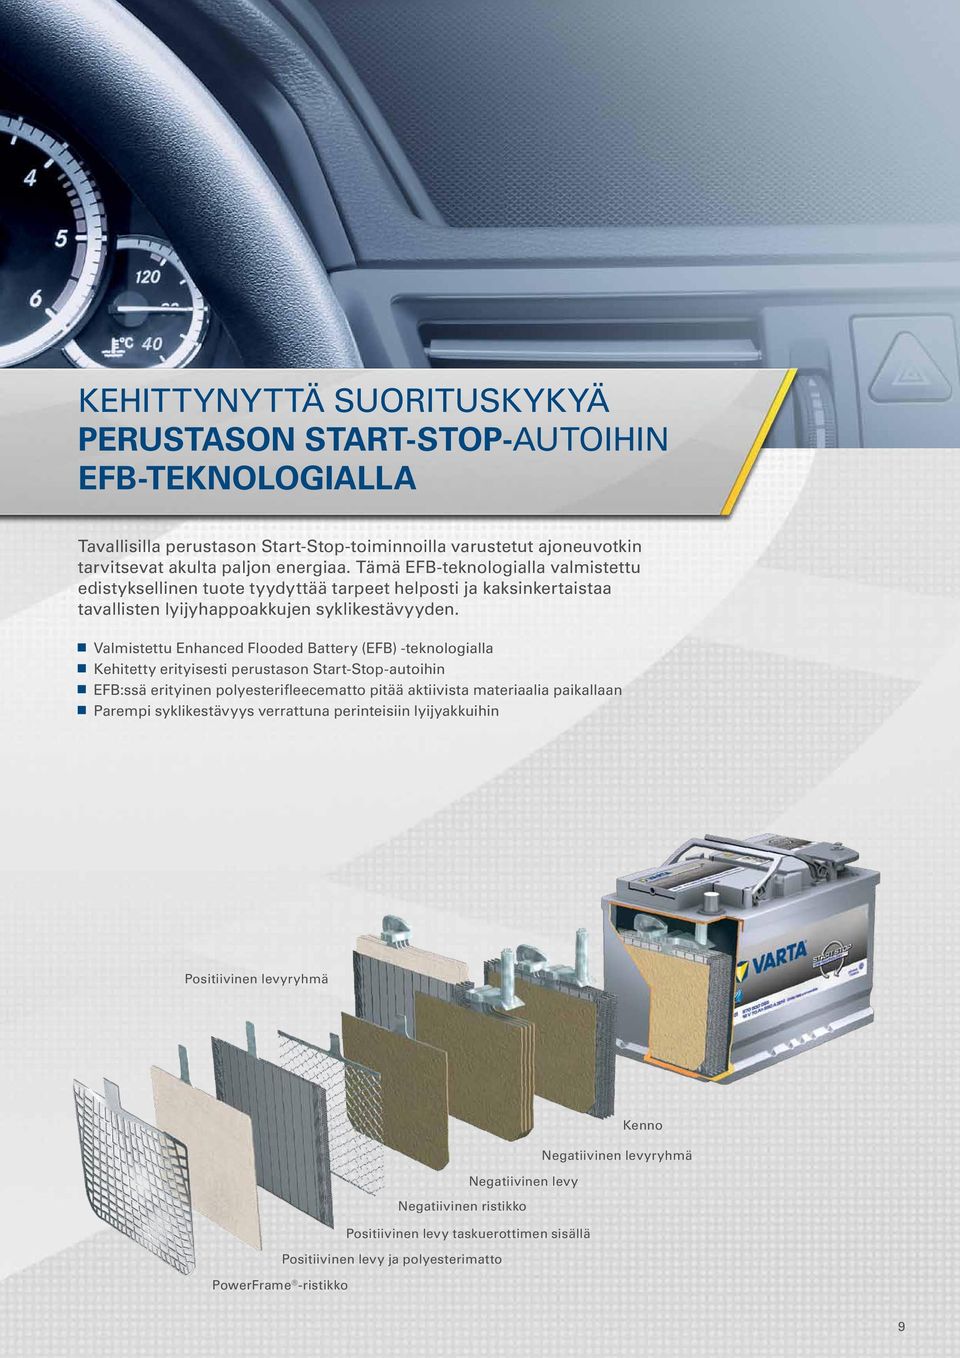 Valmistettu Enhanced Flooded Battery (EFB) -teknologialla Kehitetty erityisesti perustason Start-Stop-autoihin EFB:ssä erityinen polyesterifleecematto pitää aktiivista materiaalia paikallaan